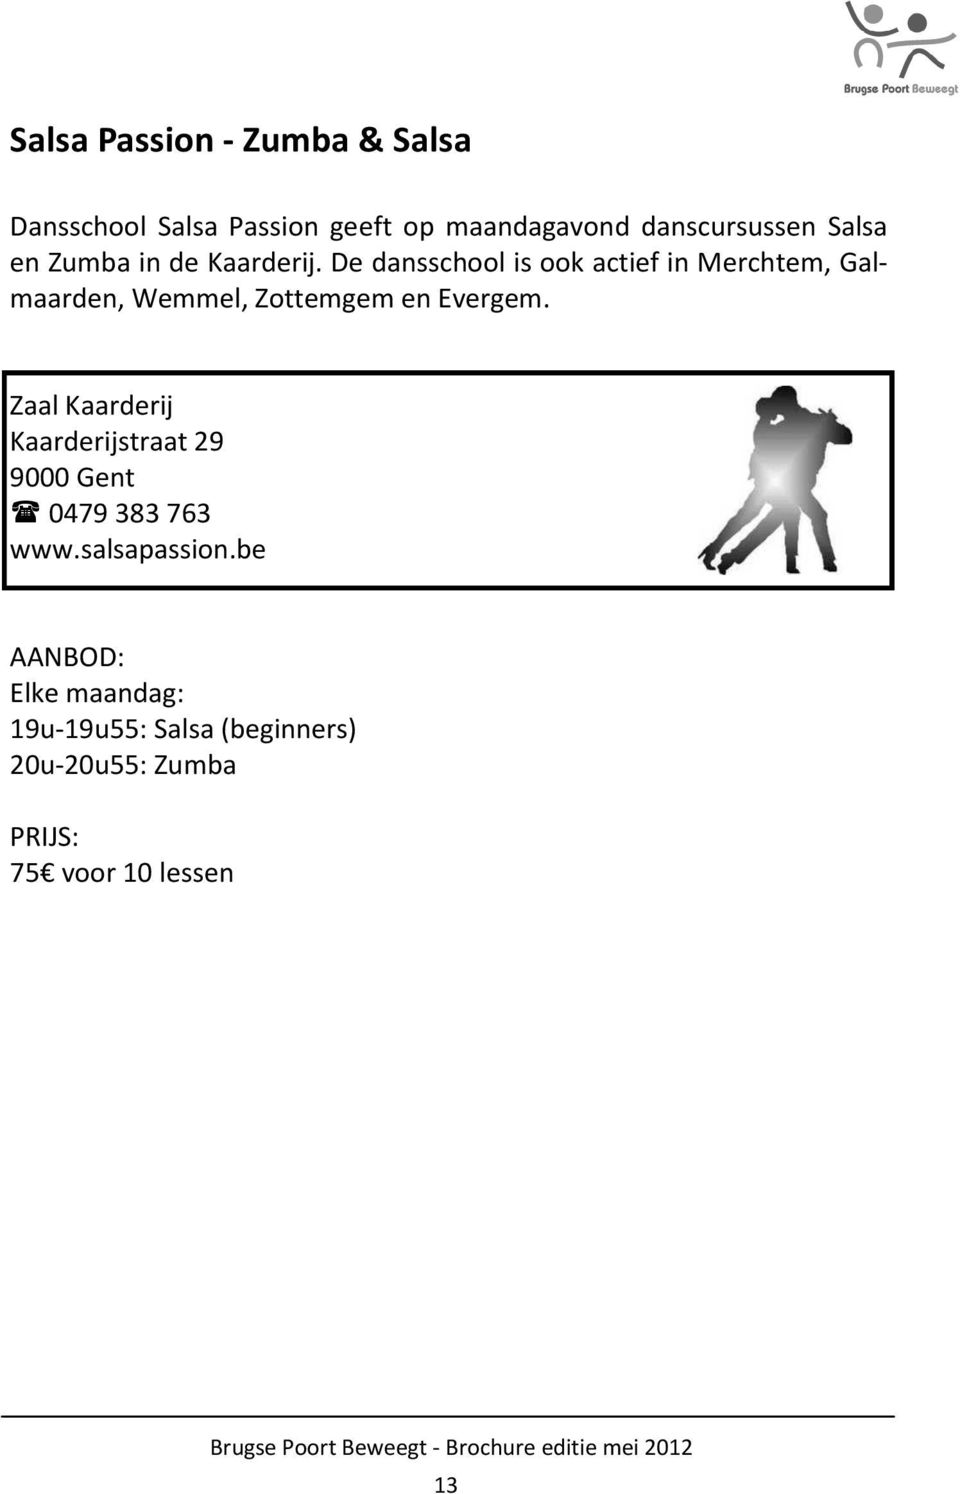 De dansschool is ook actief in Merchtem, Galmaarden, Wemmel, Zottemgem en Evergem.